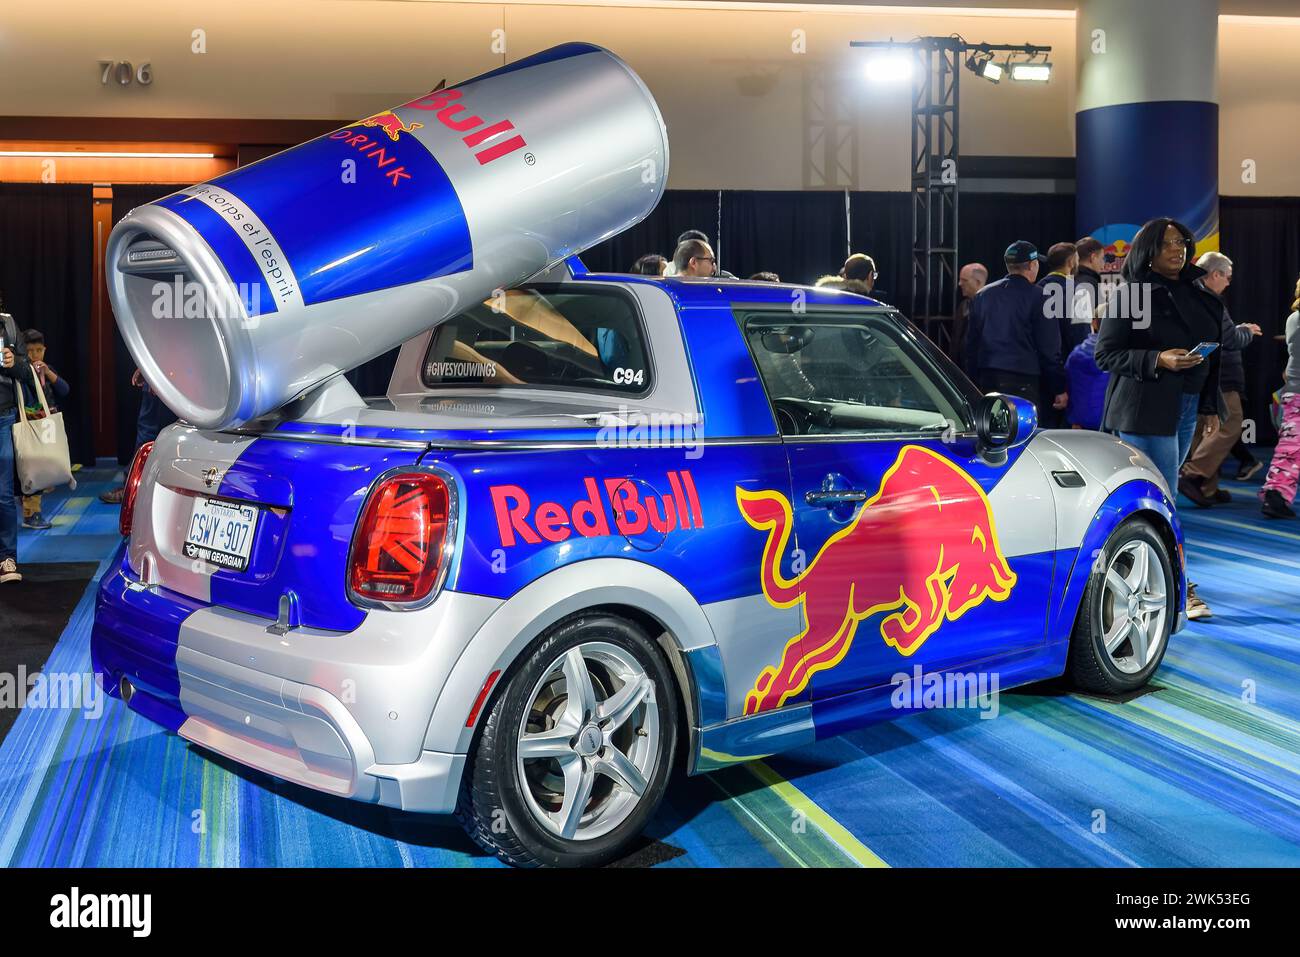 Das Auto war mit einer Red Bull-Werbung und einer Dose des Getränks auf dem Dach bedeckt. Stockfoto